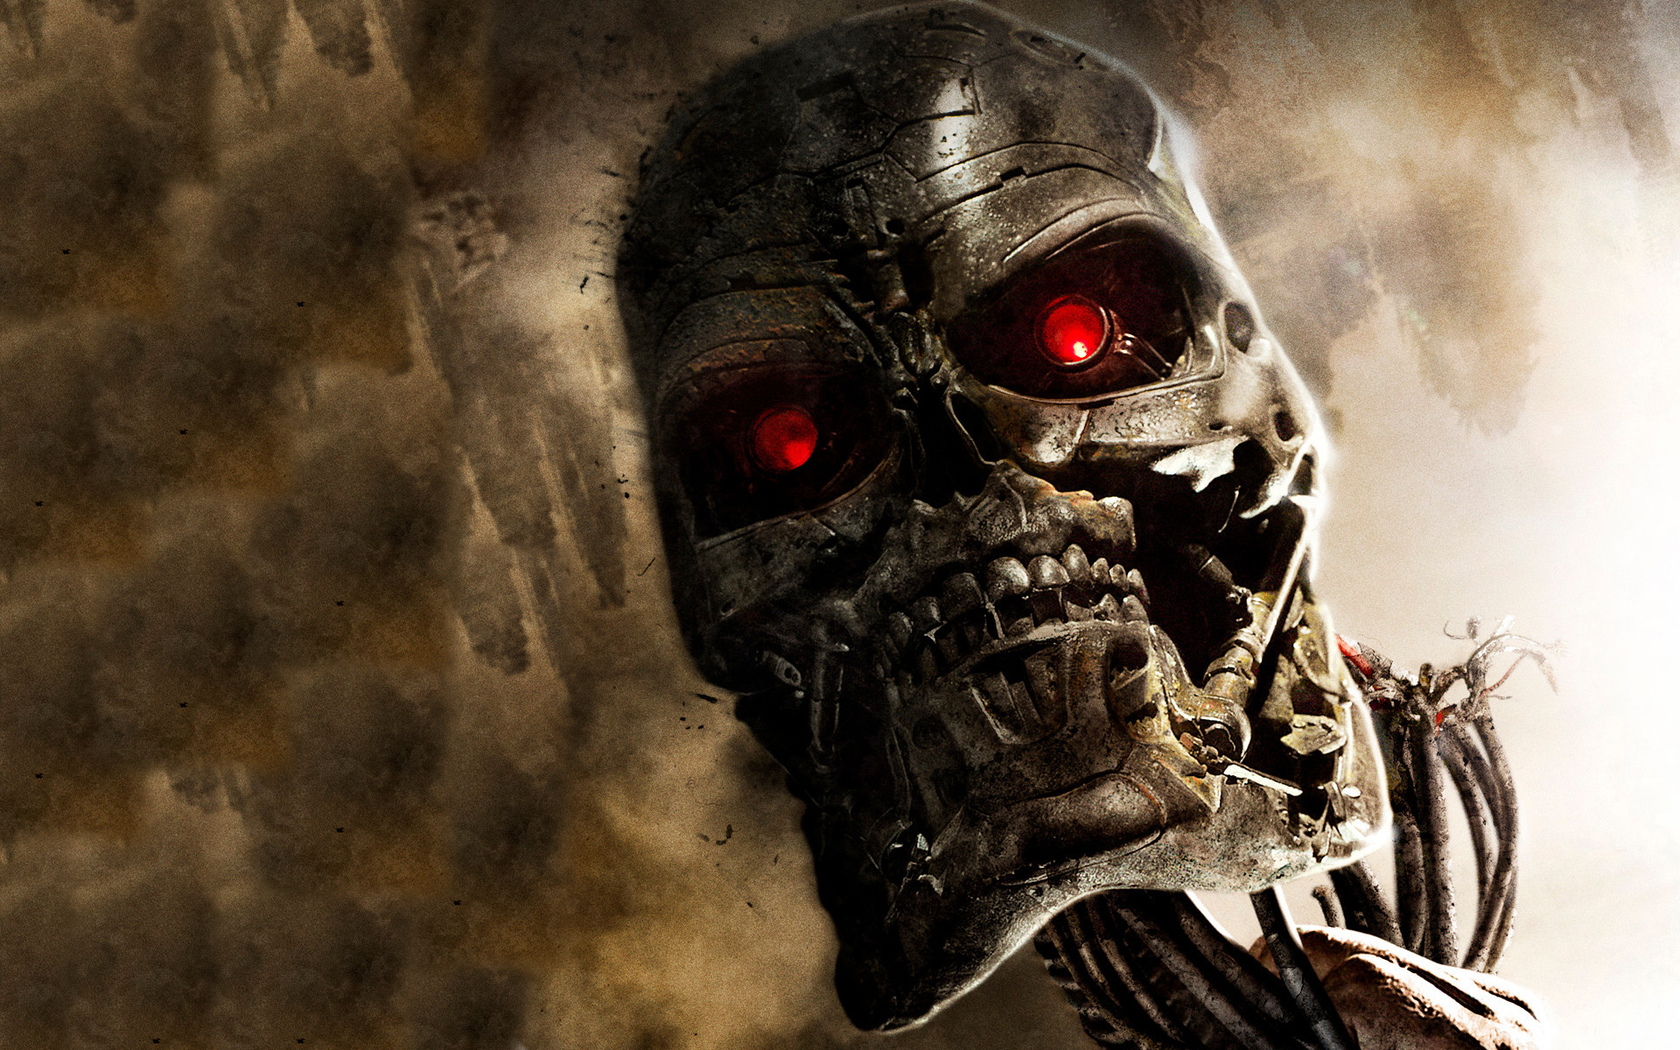 Descarga gratis la imagen Terminator, Películas en el escritorio de tu PC